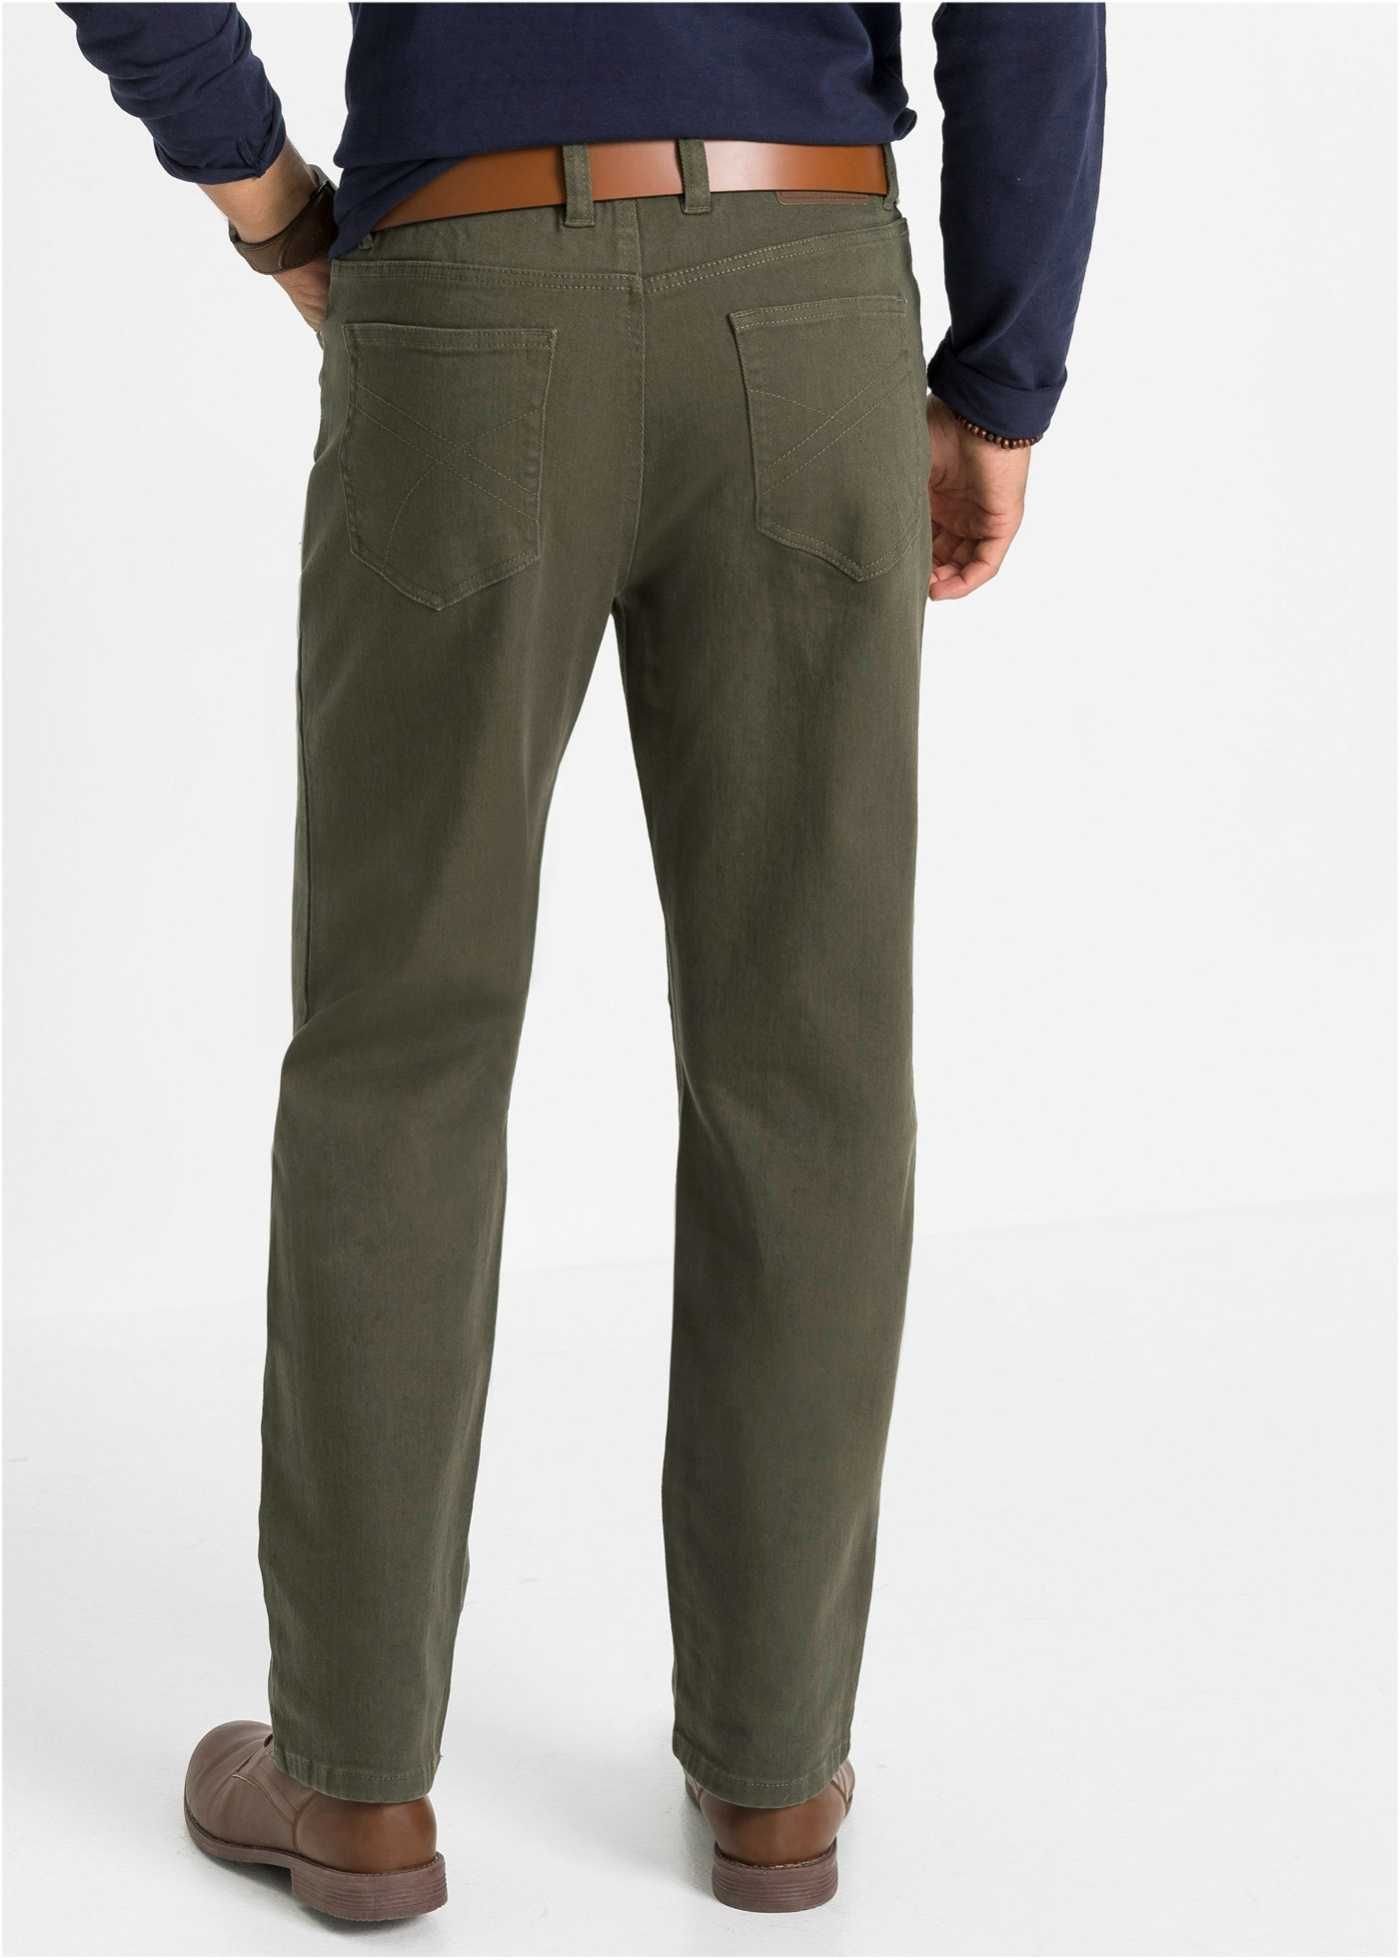 Spodnie męskie zielone stretch Bawełna Rozmiar 48/24 na niskie osoby